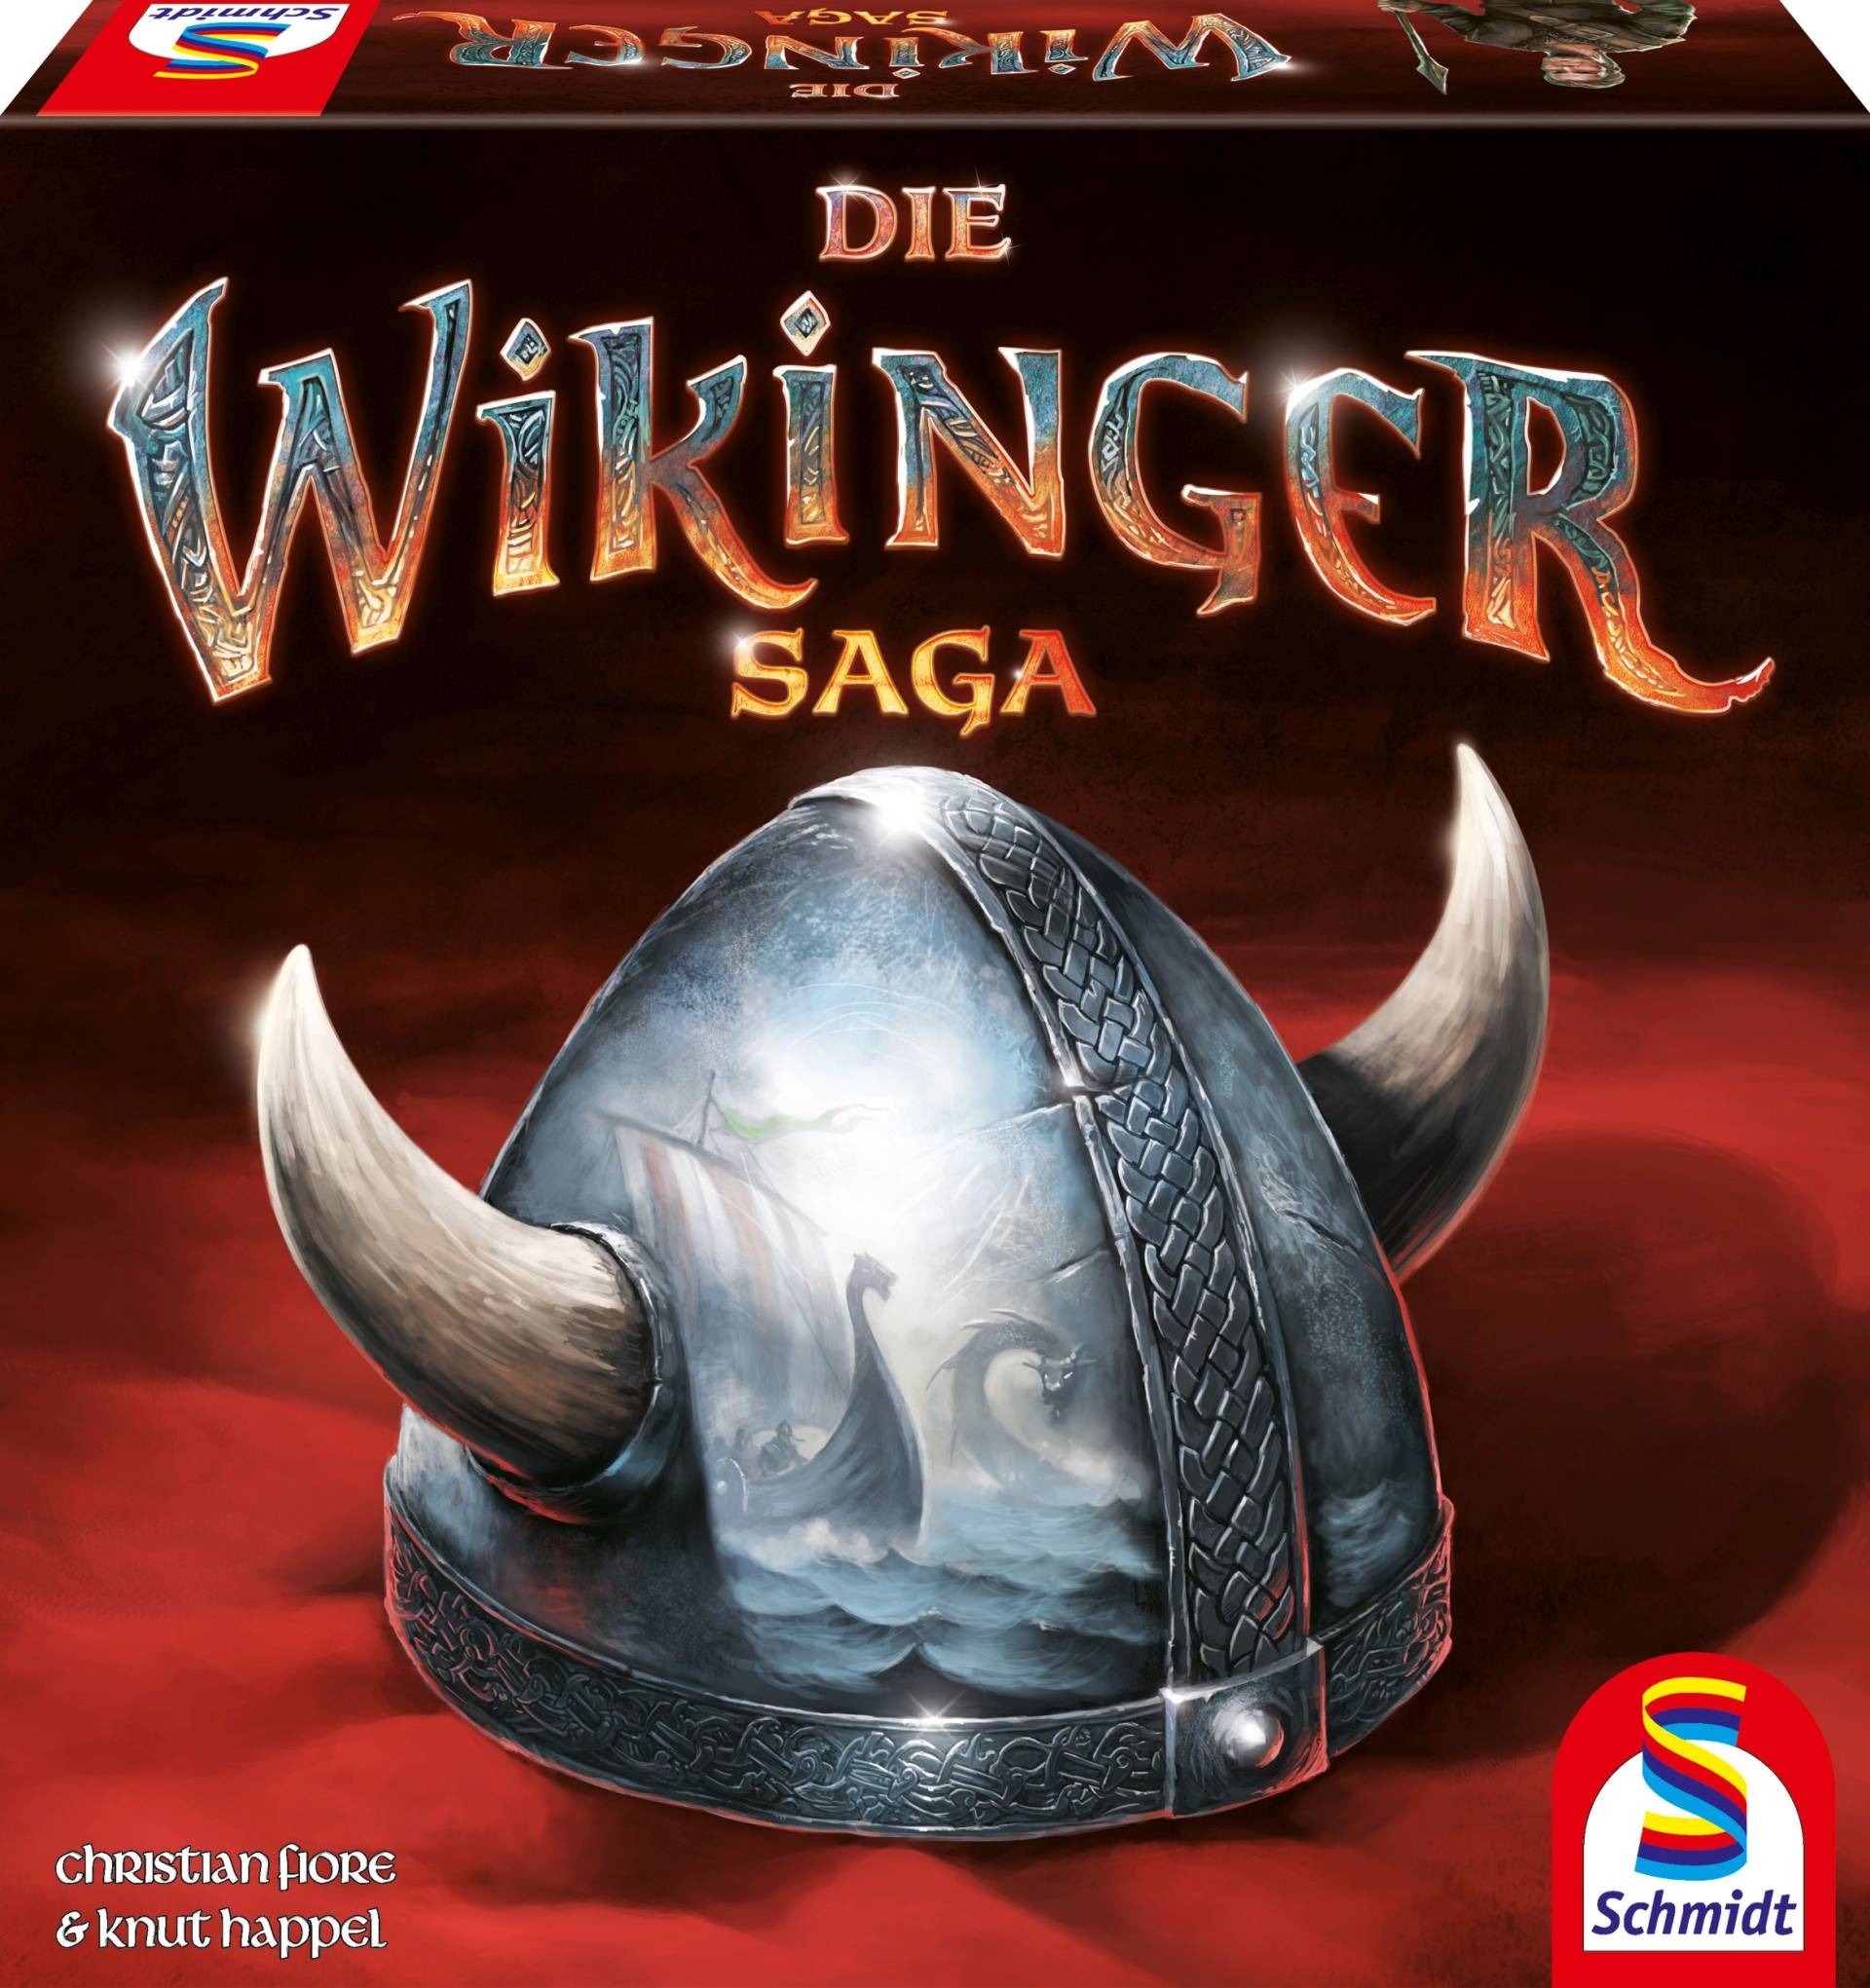 Die Wikinger Saga von Schmidt Spiele